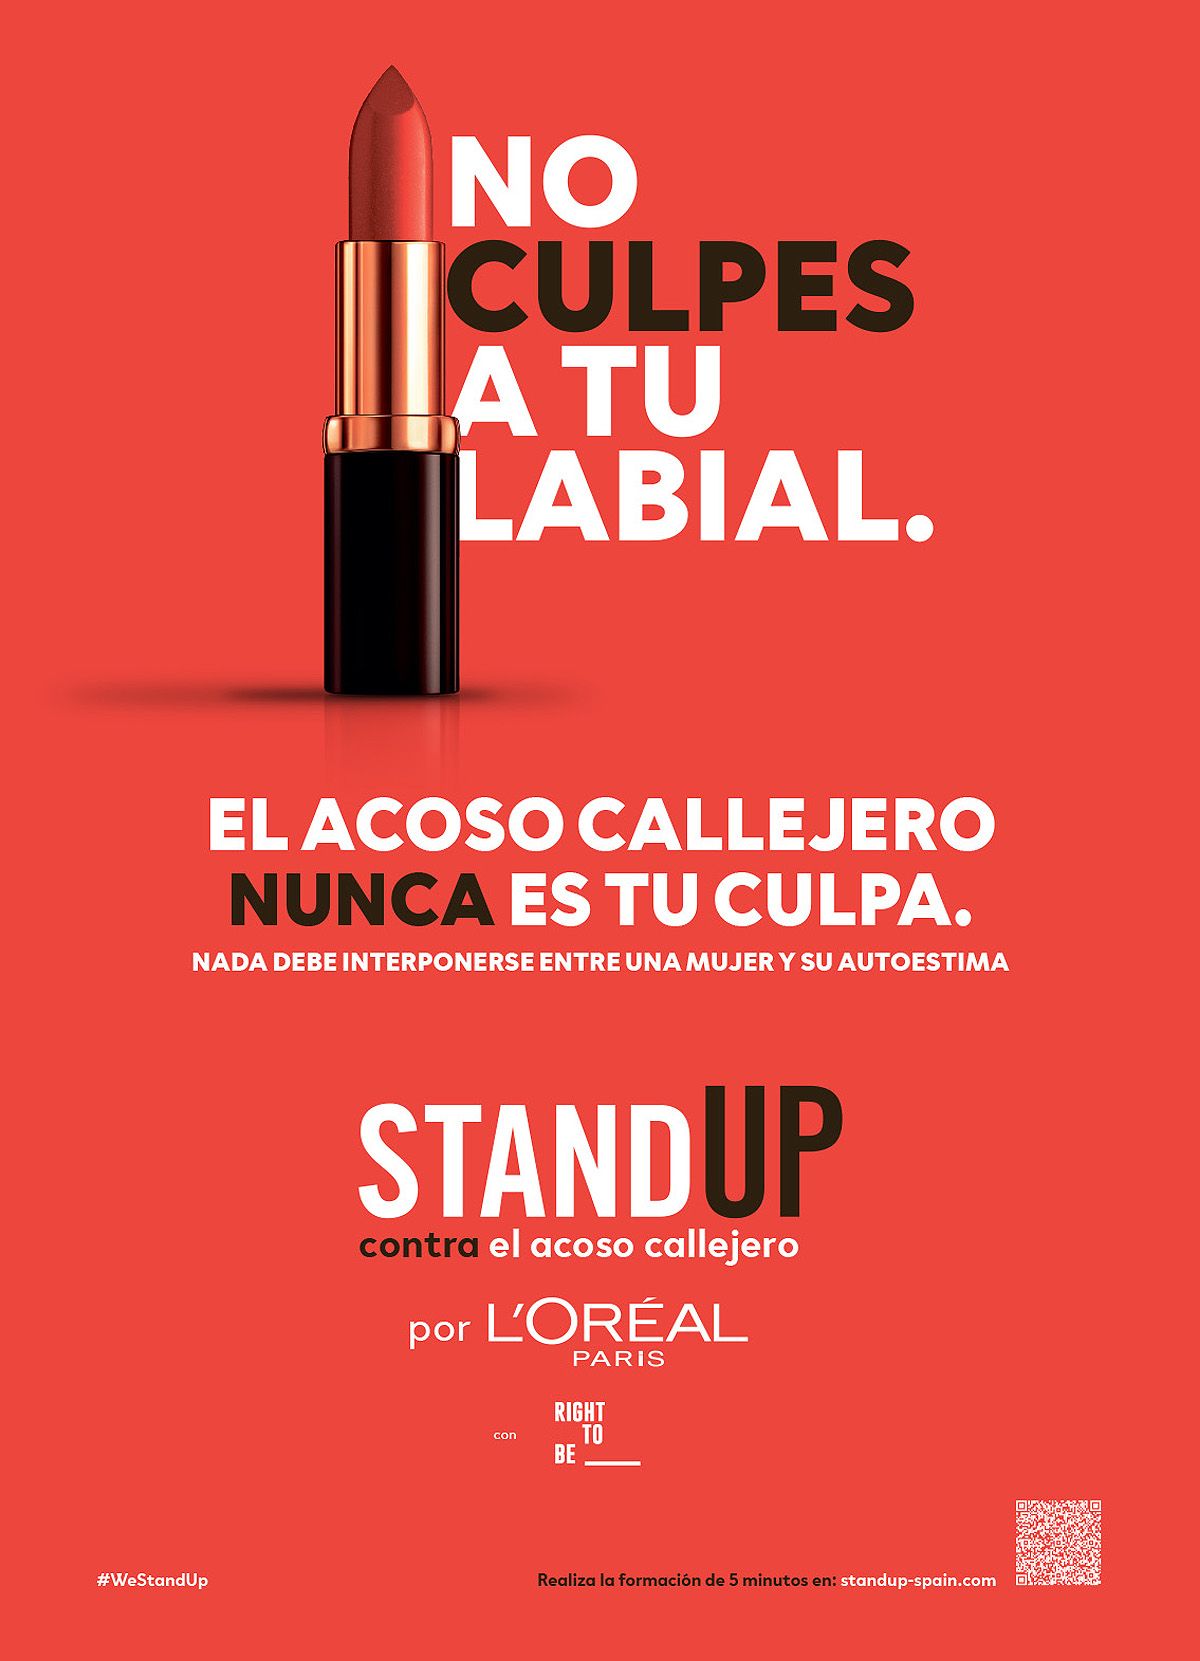 Stand Up de L'Oréal